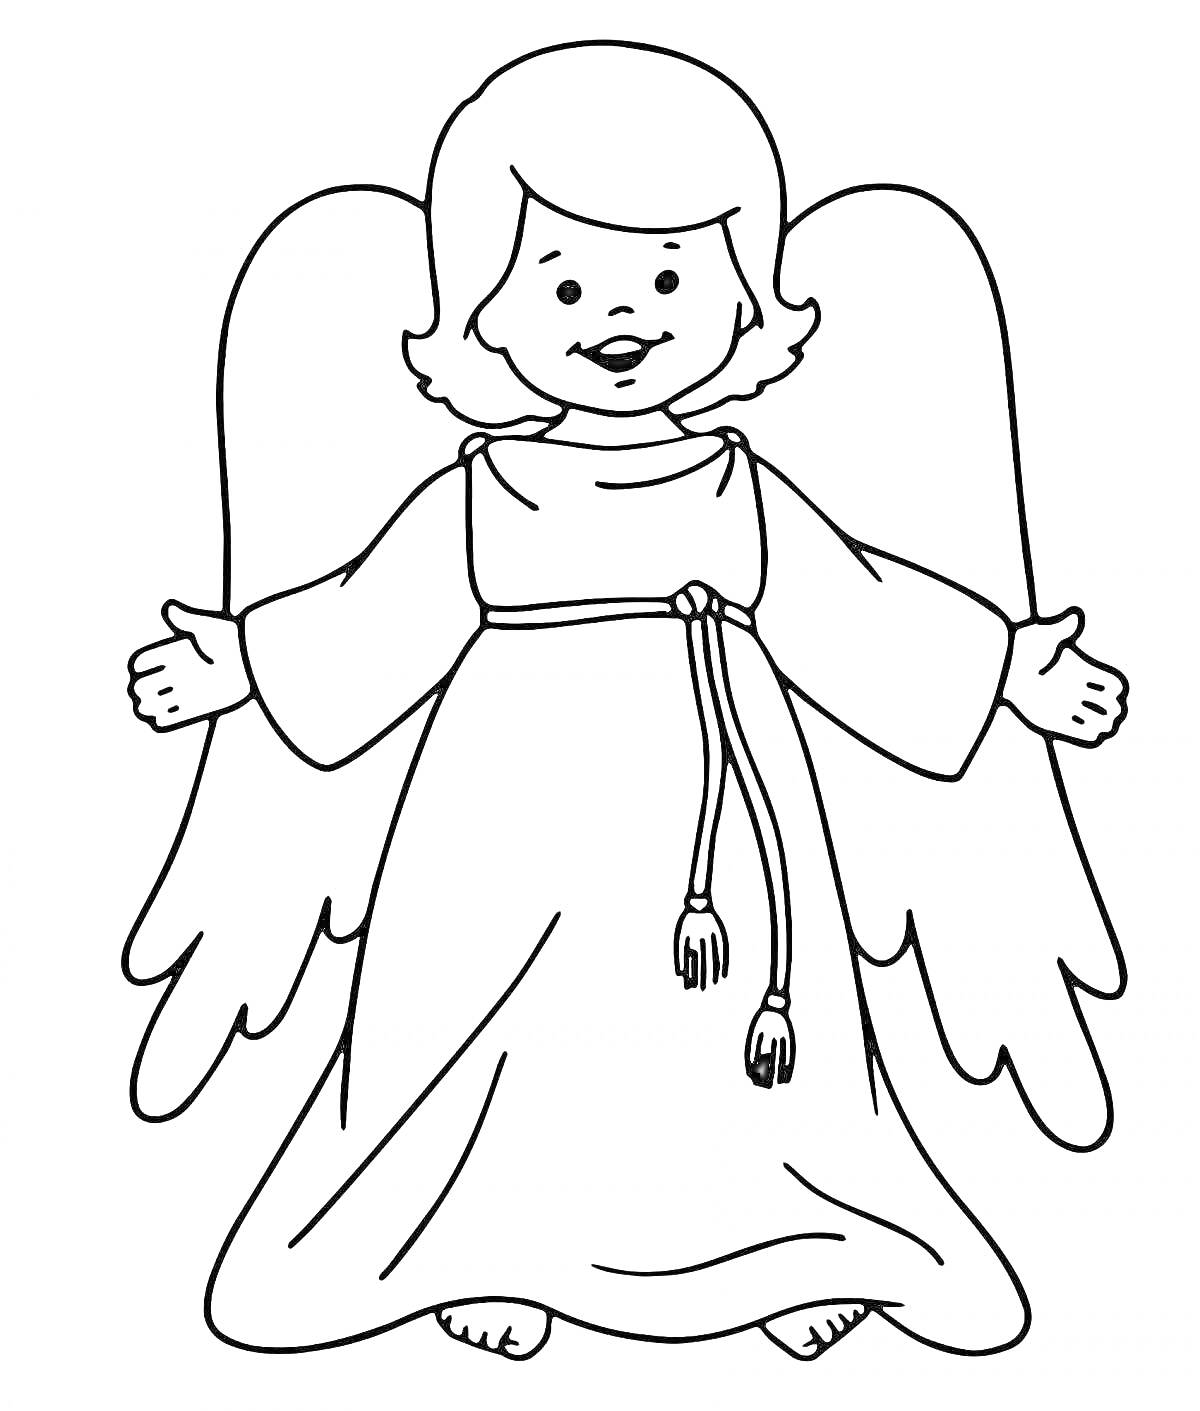 Раскраска Малыш-ангелочек с крыльями в распахнутых объятиях